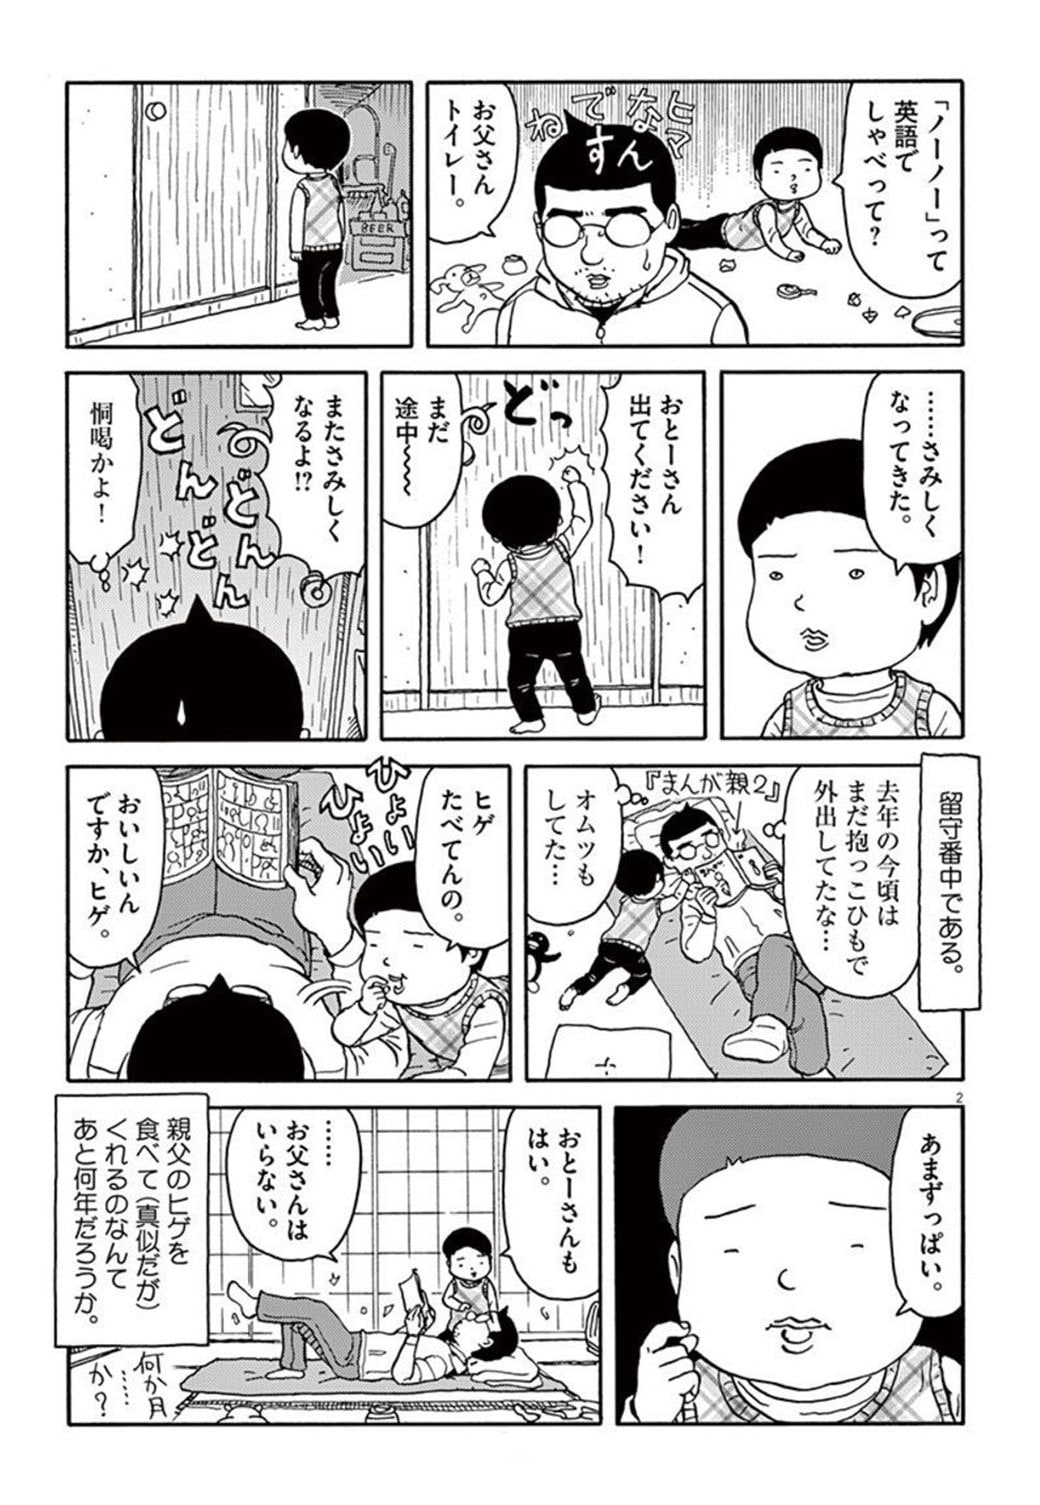 父 吉田戦車が ひな人形 に手をあわせたワケ 漫画 まんが親 その7 東洋経済オンライン Goo ニュース